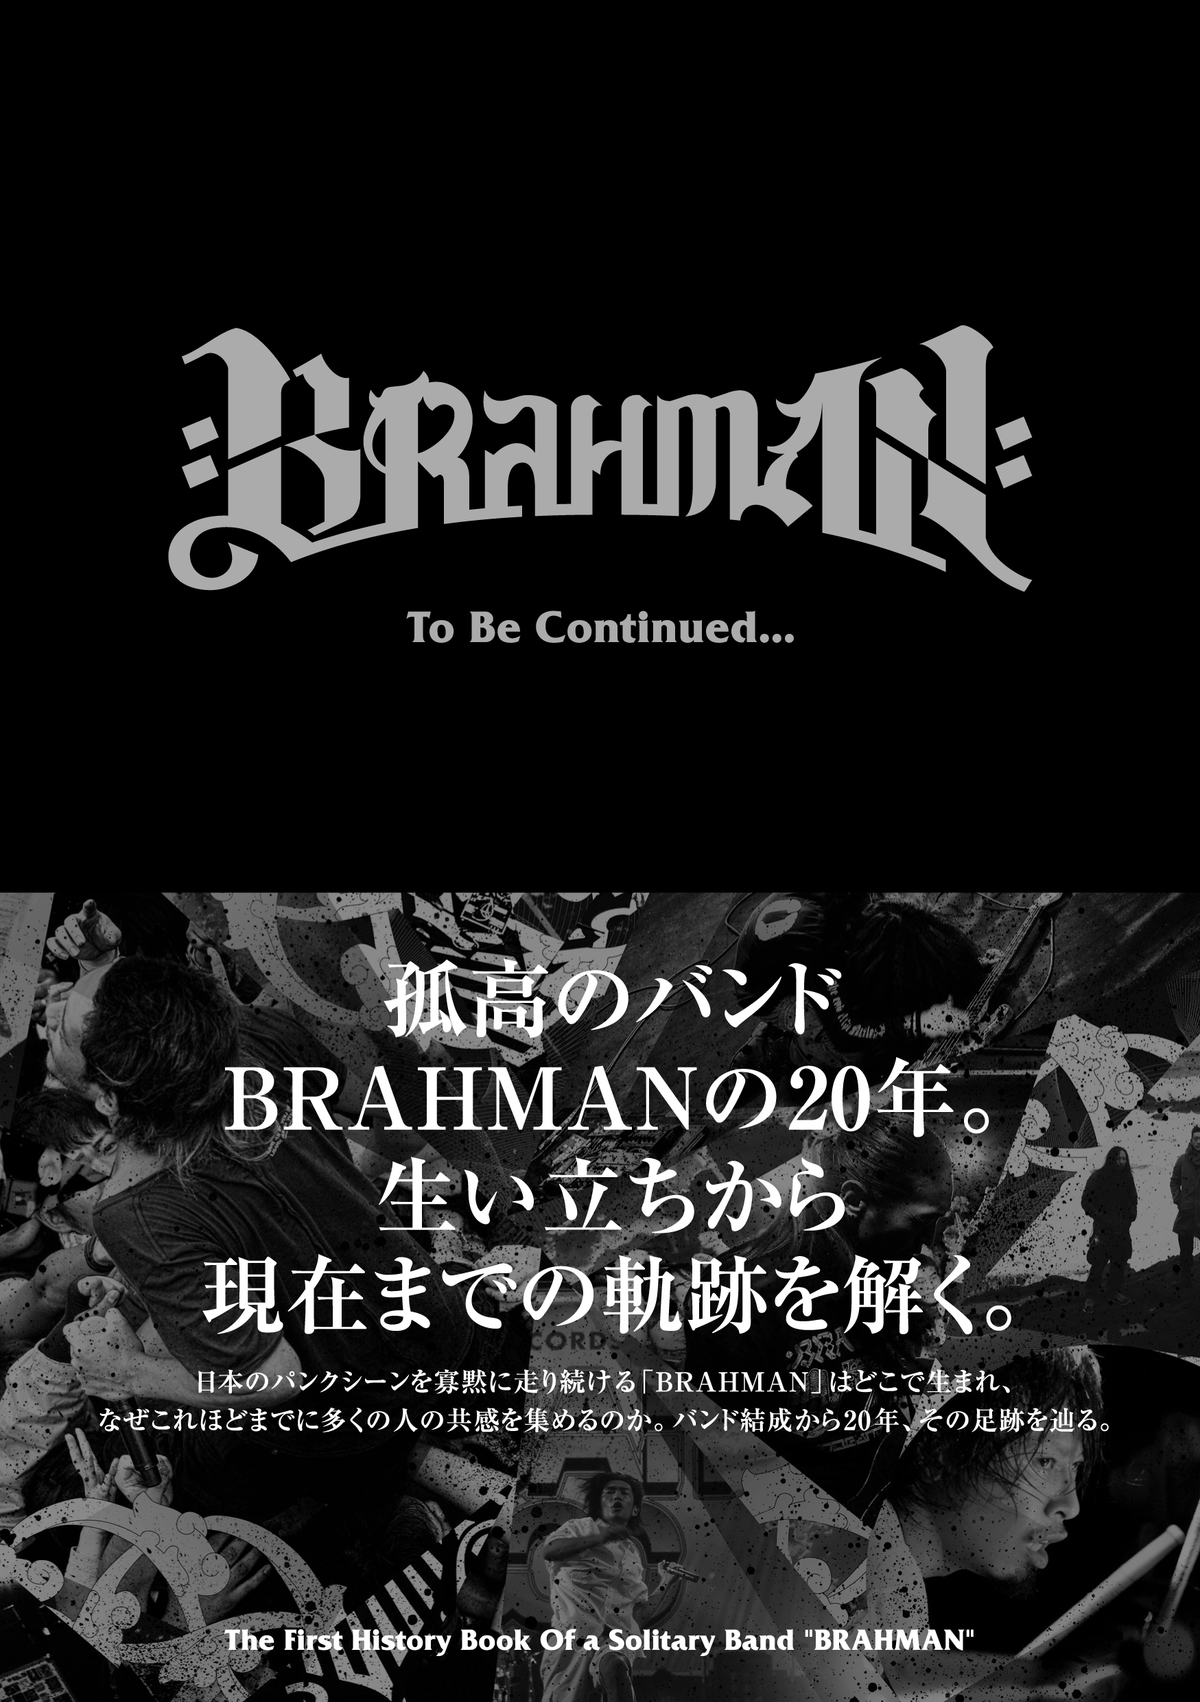 BRAHMAN、バンド結成から20年の足跡を辿ったアーカイブ本『To Be  Continued...』を3/12に発売決定！細美武士らのインタビューも掲載！ | 激ロック ニュース